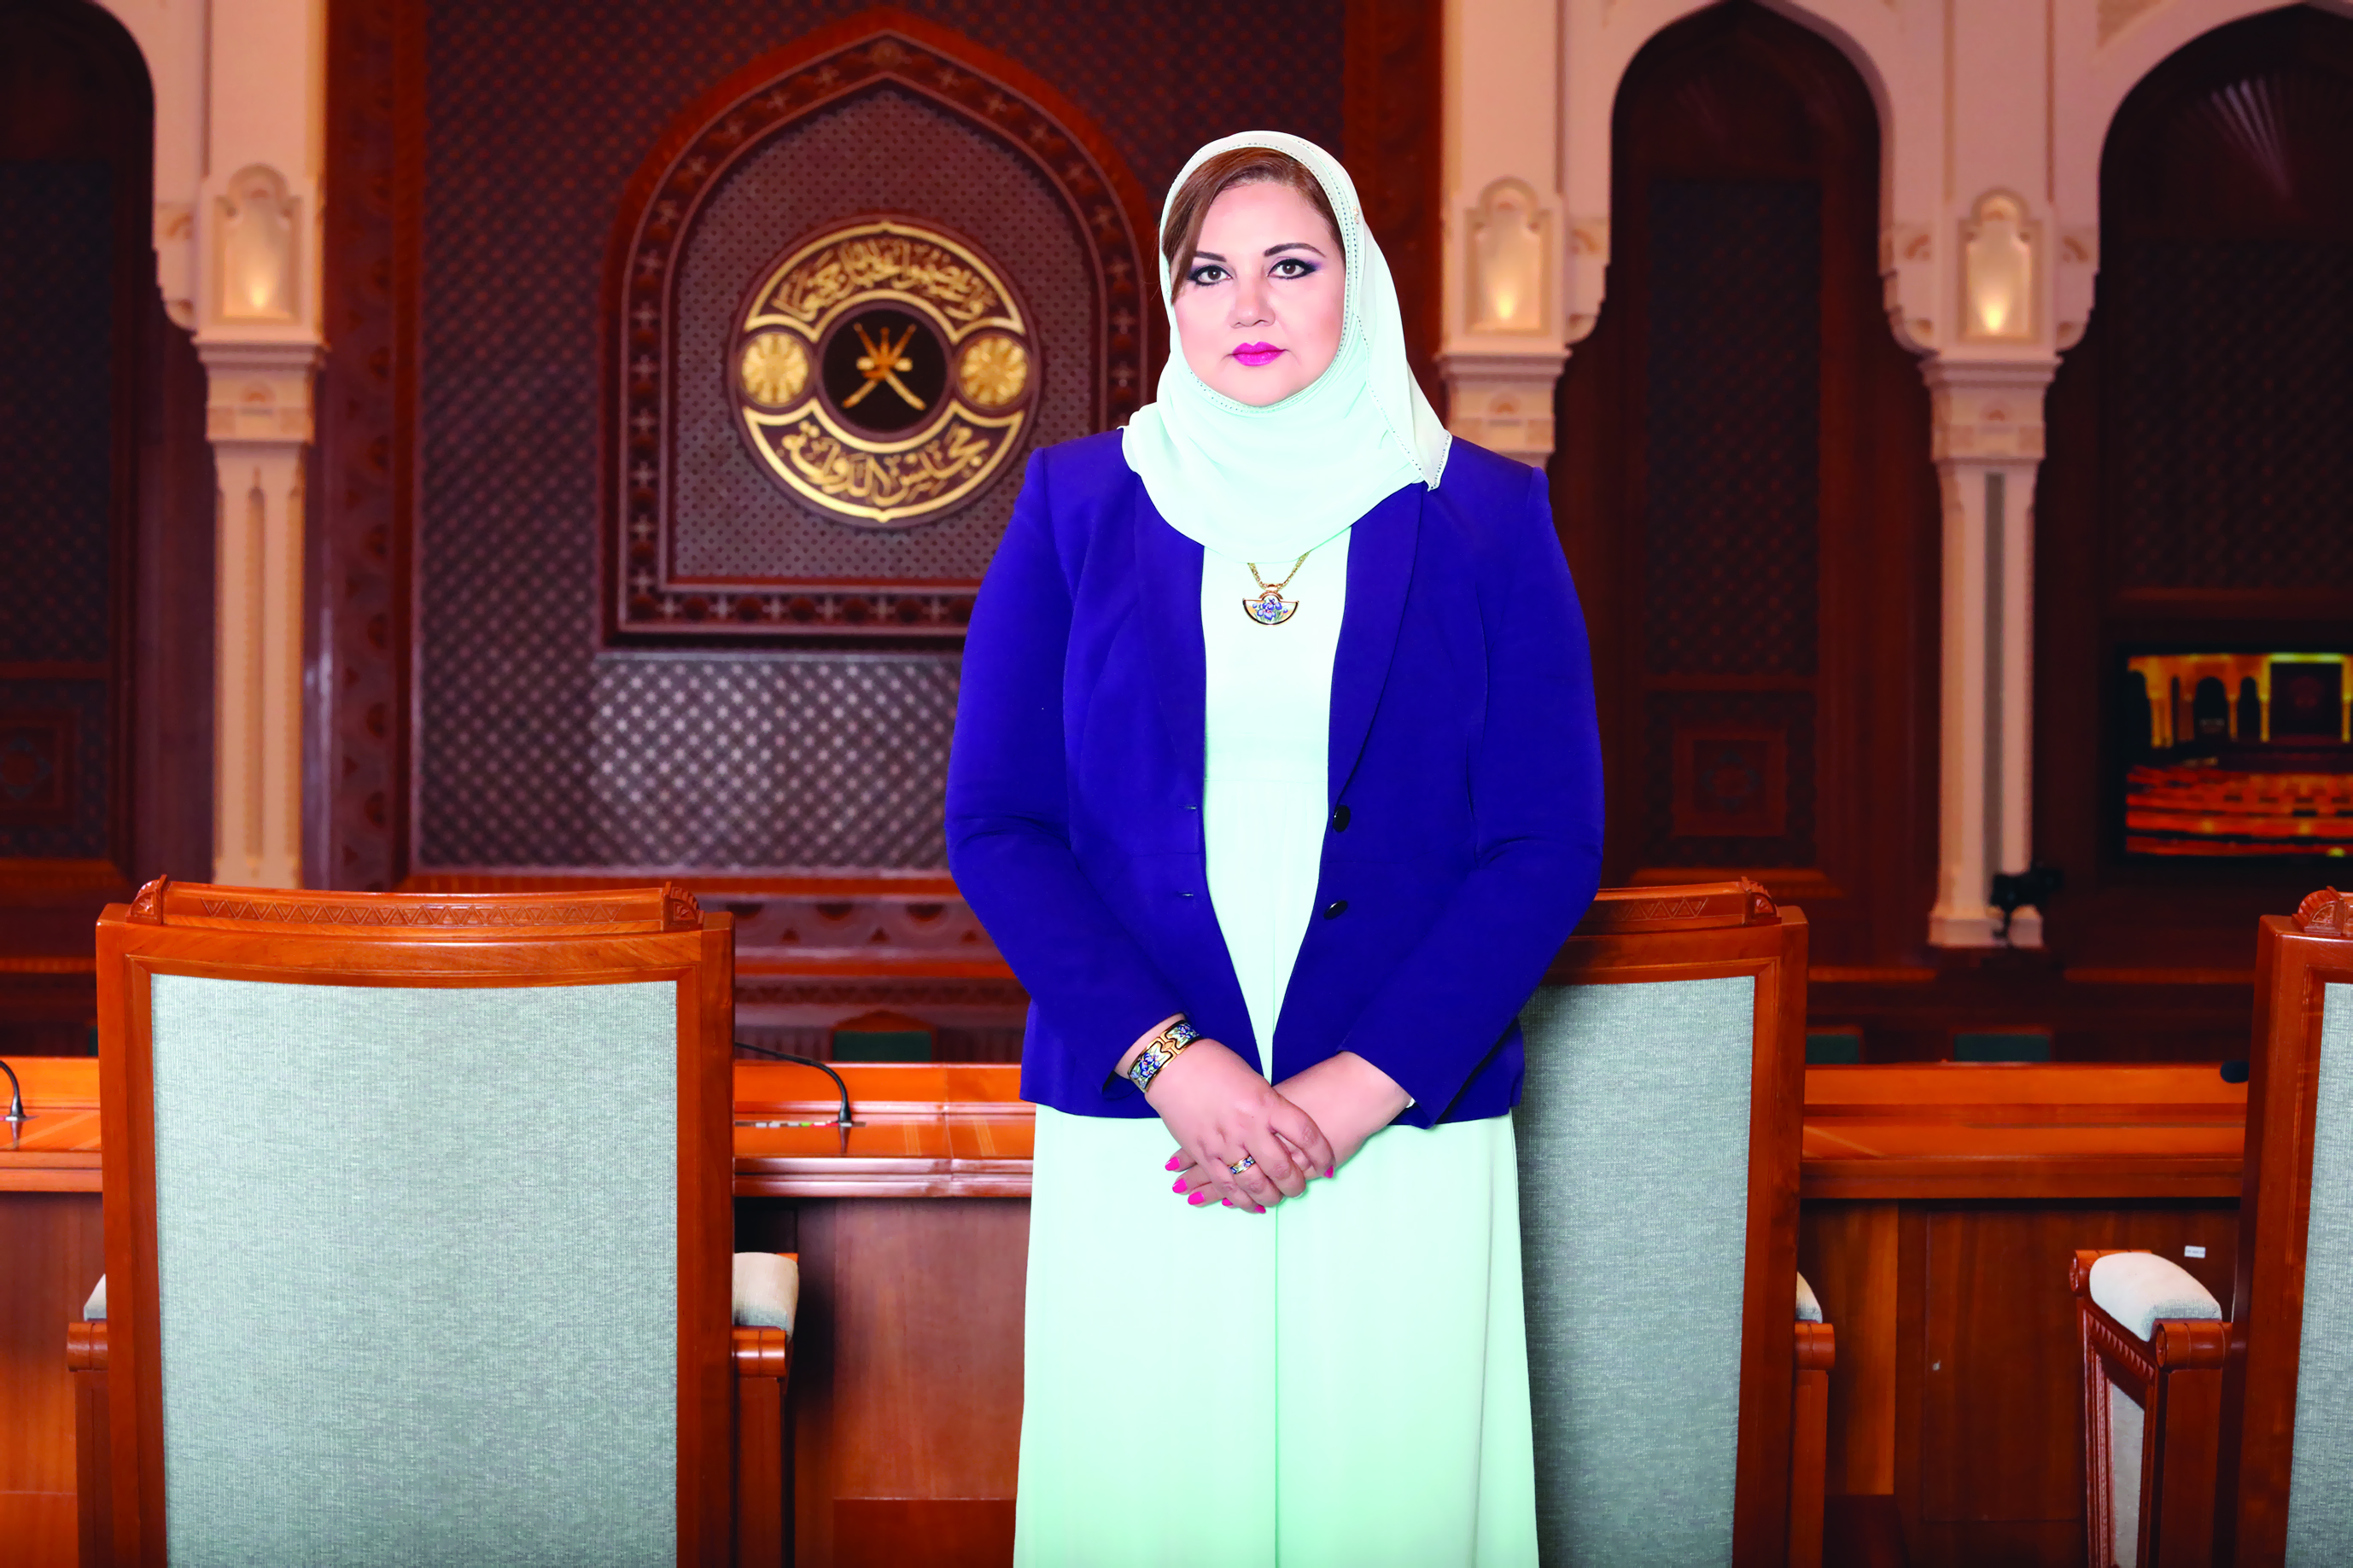 تكريم نائبة رئيس مجلس الدولة بوسام المرأة القيادية المسؤولة اجتماعياً